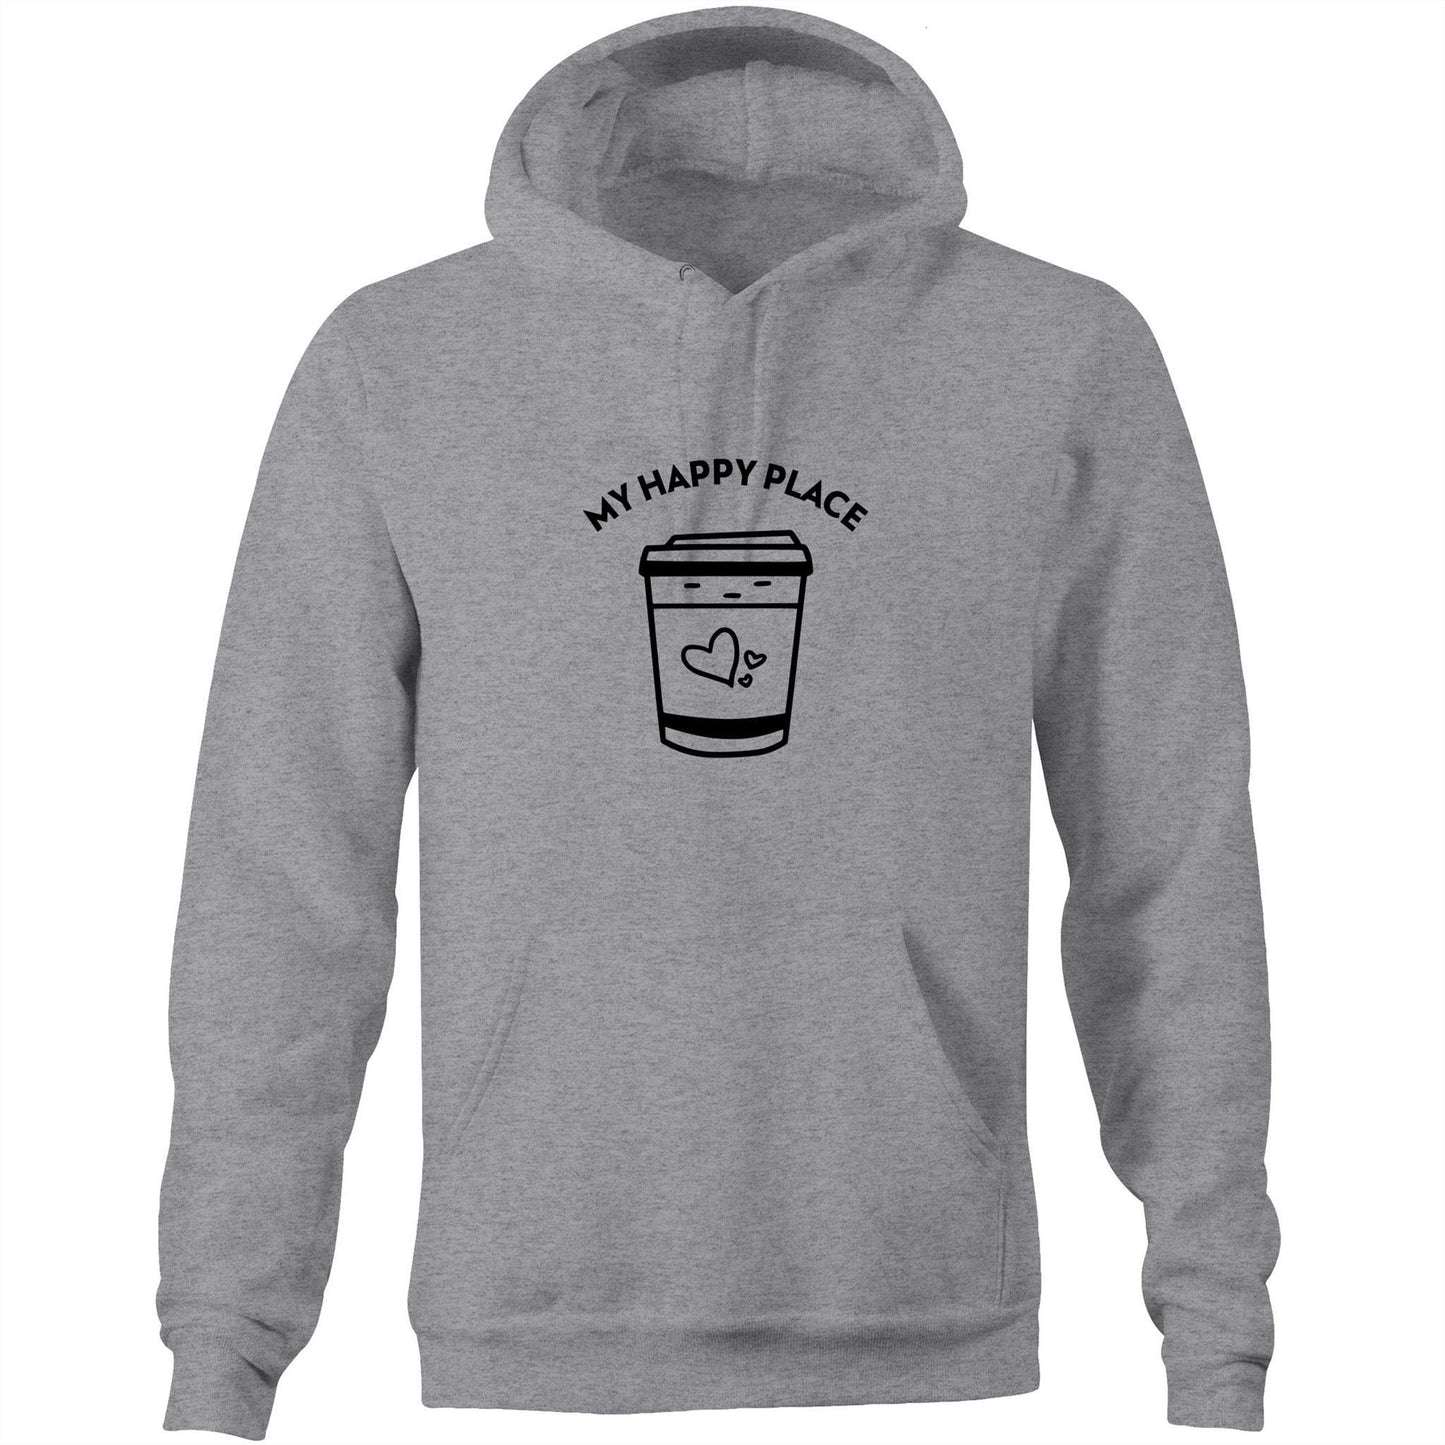 My Happy Place - Pocket Hoodie Sweatshirt Grey Marle Hoodie Coffee Mens Womens